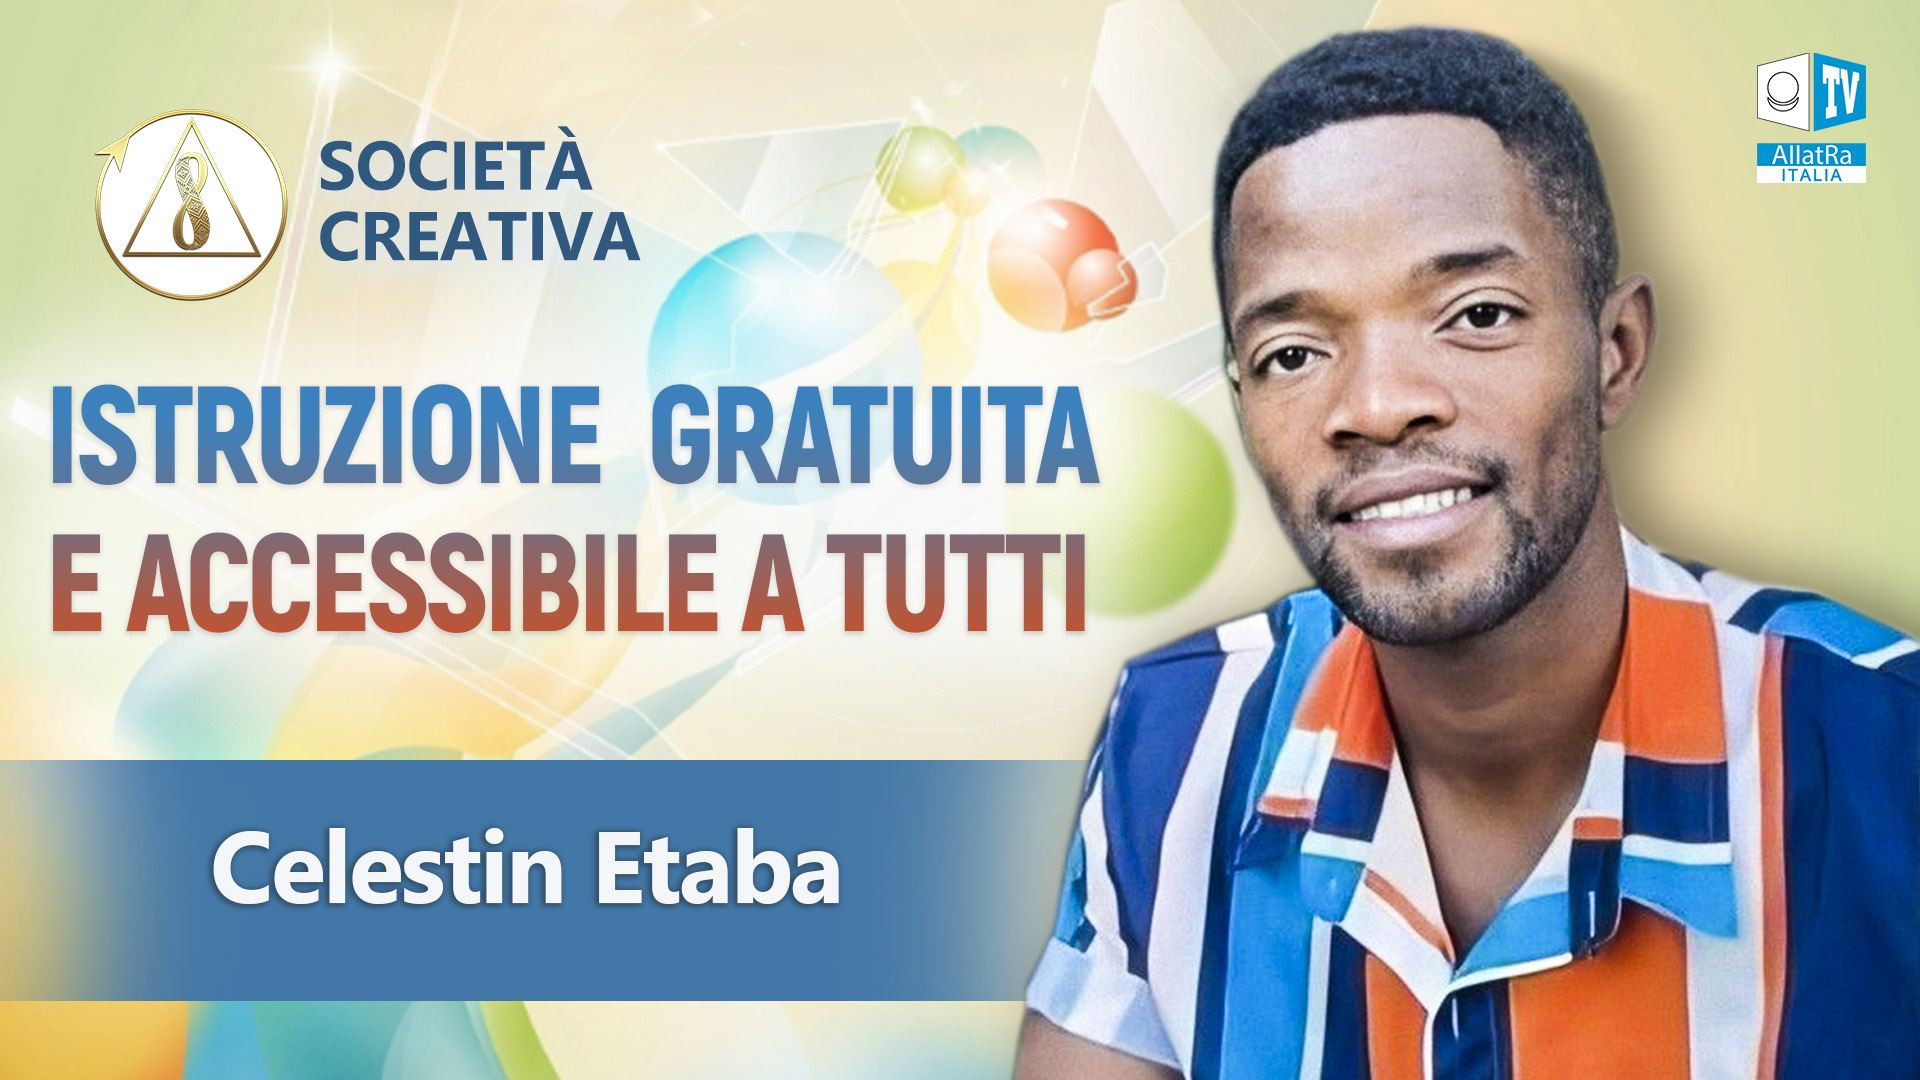 Celestin Etaba / Istruzione gratuita e accessibile a tutti in una Società Creativa